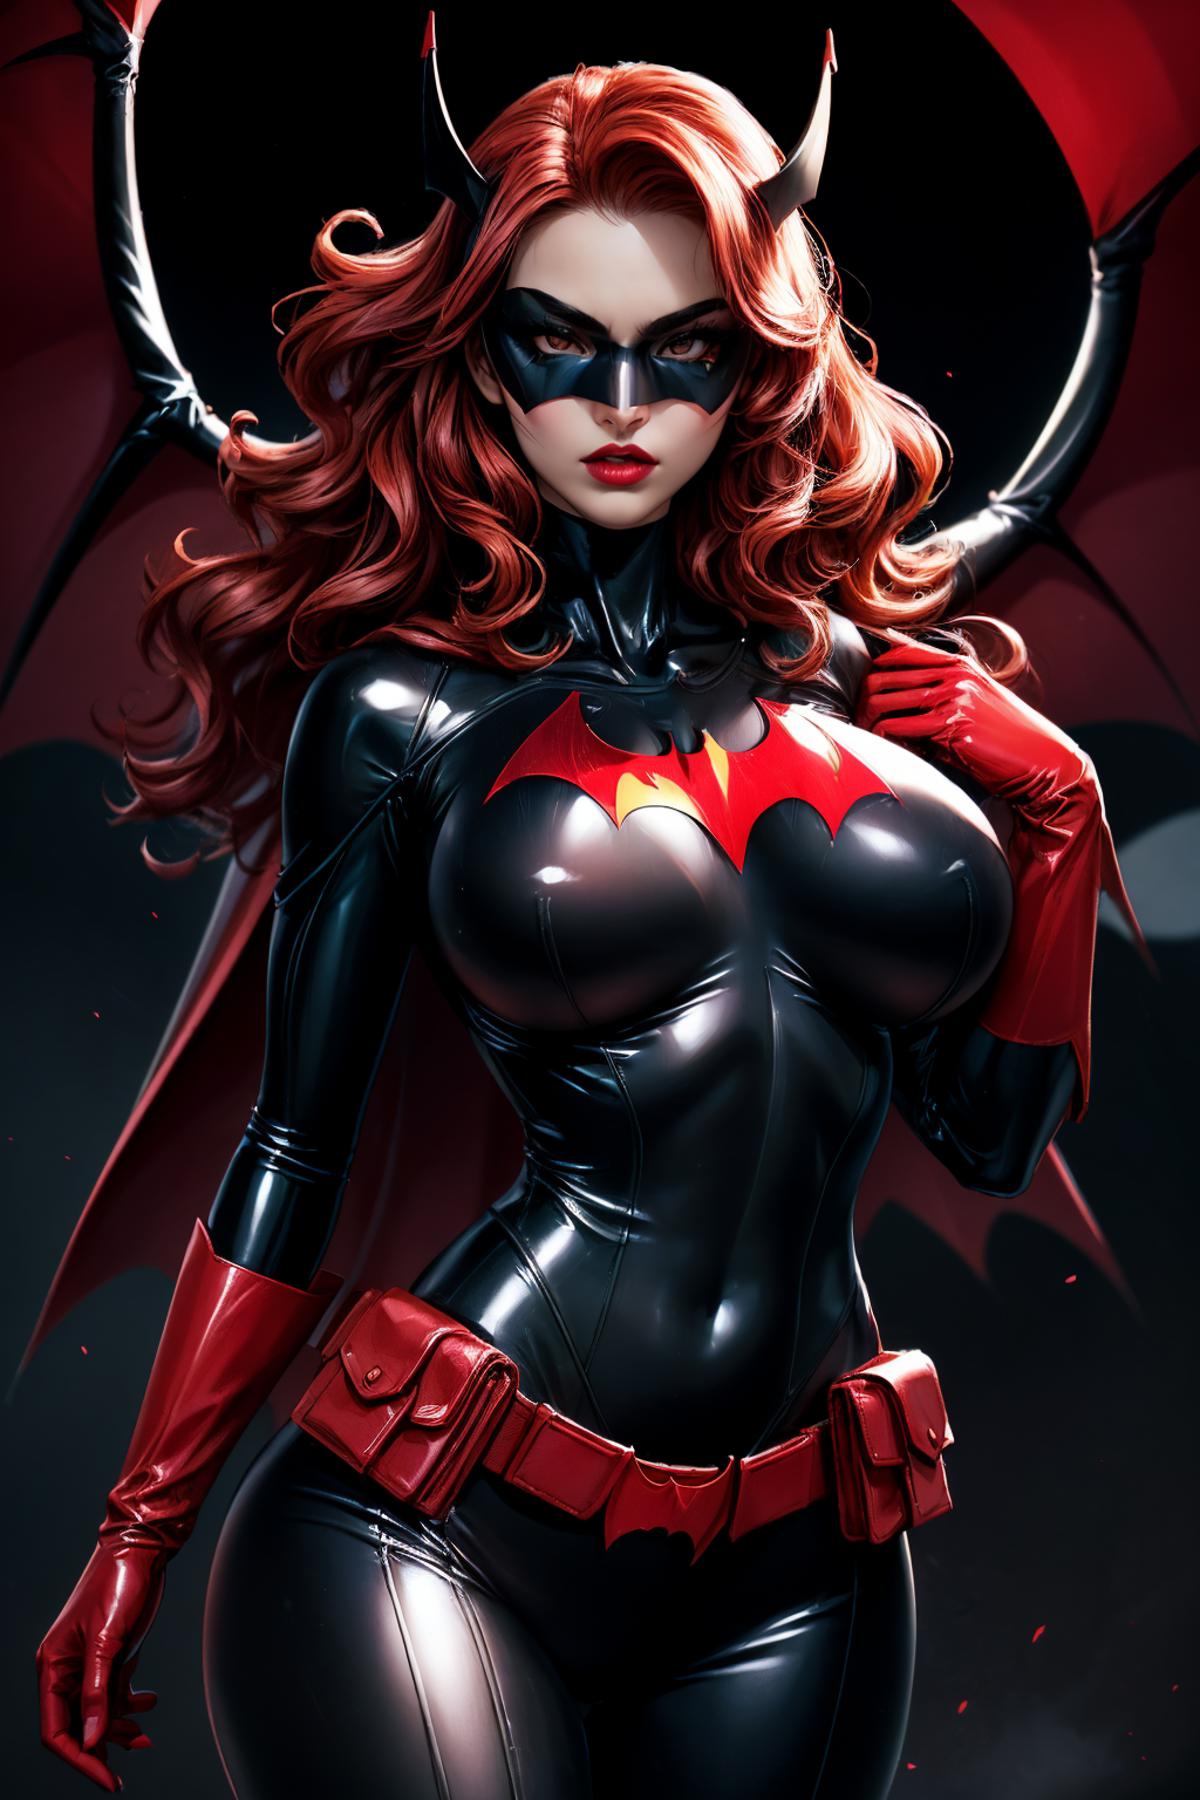 Batwoman image by iJWiTGS8